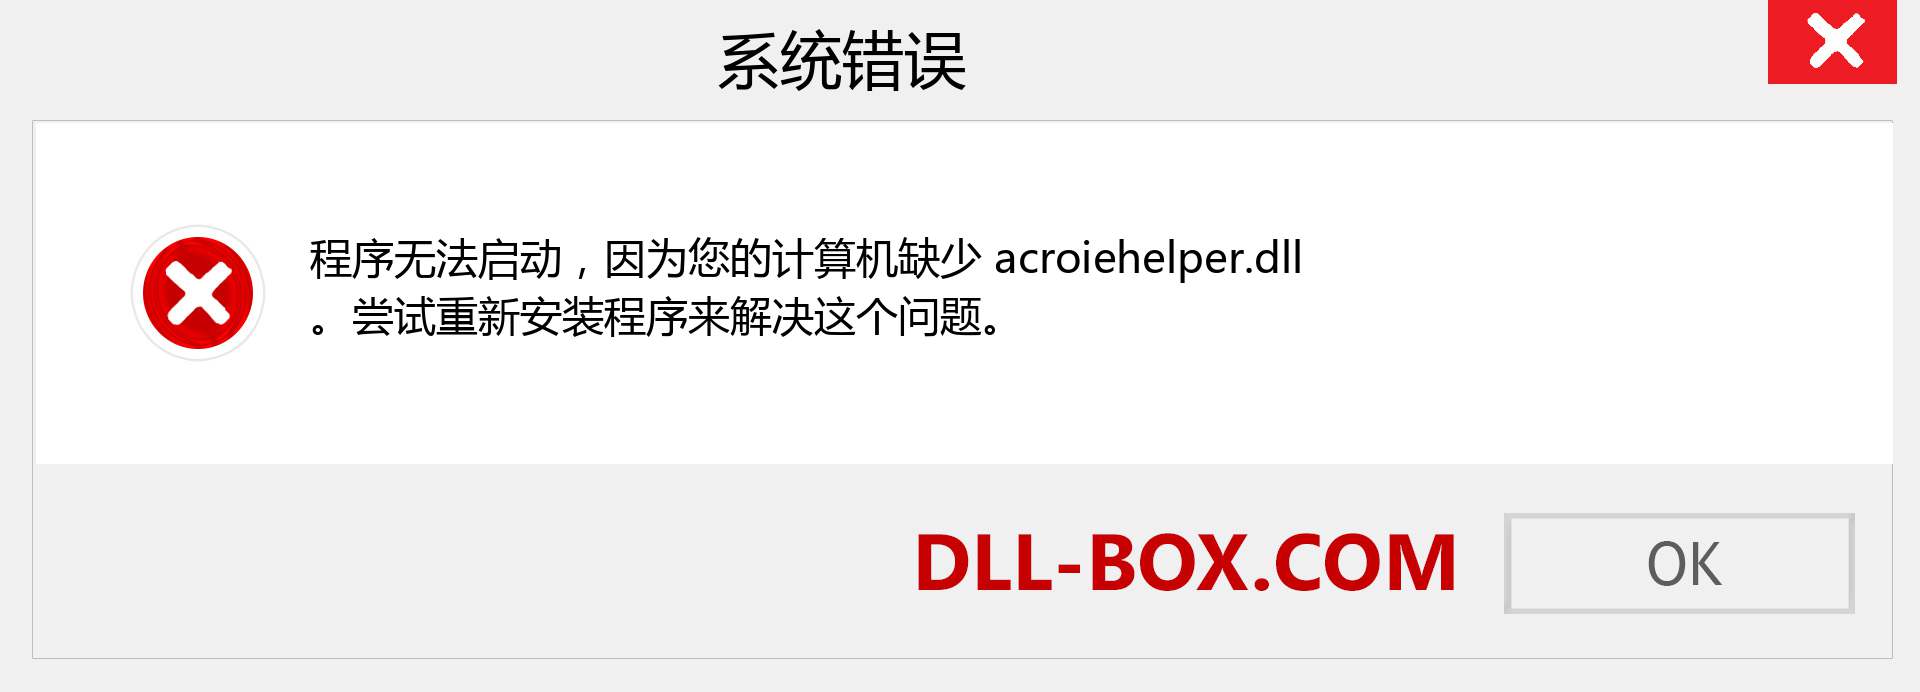 acroiehelper.dll 文件丢失？。 适用于 Windows 7、8、10 的下载 - 修复 Windows、照片、图像上的 acroiehelper dll 丢失错误